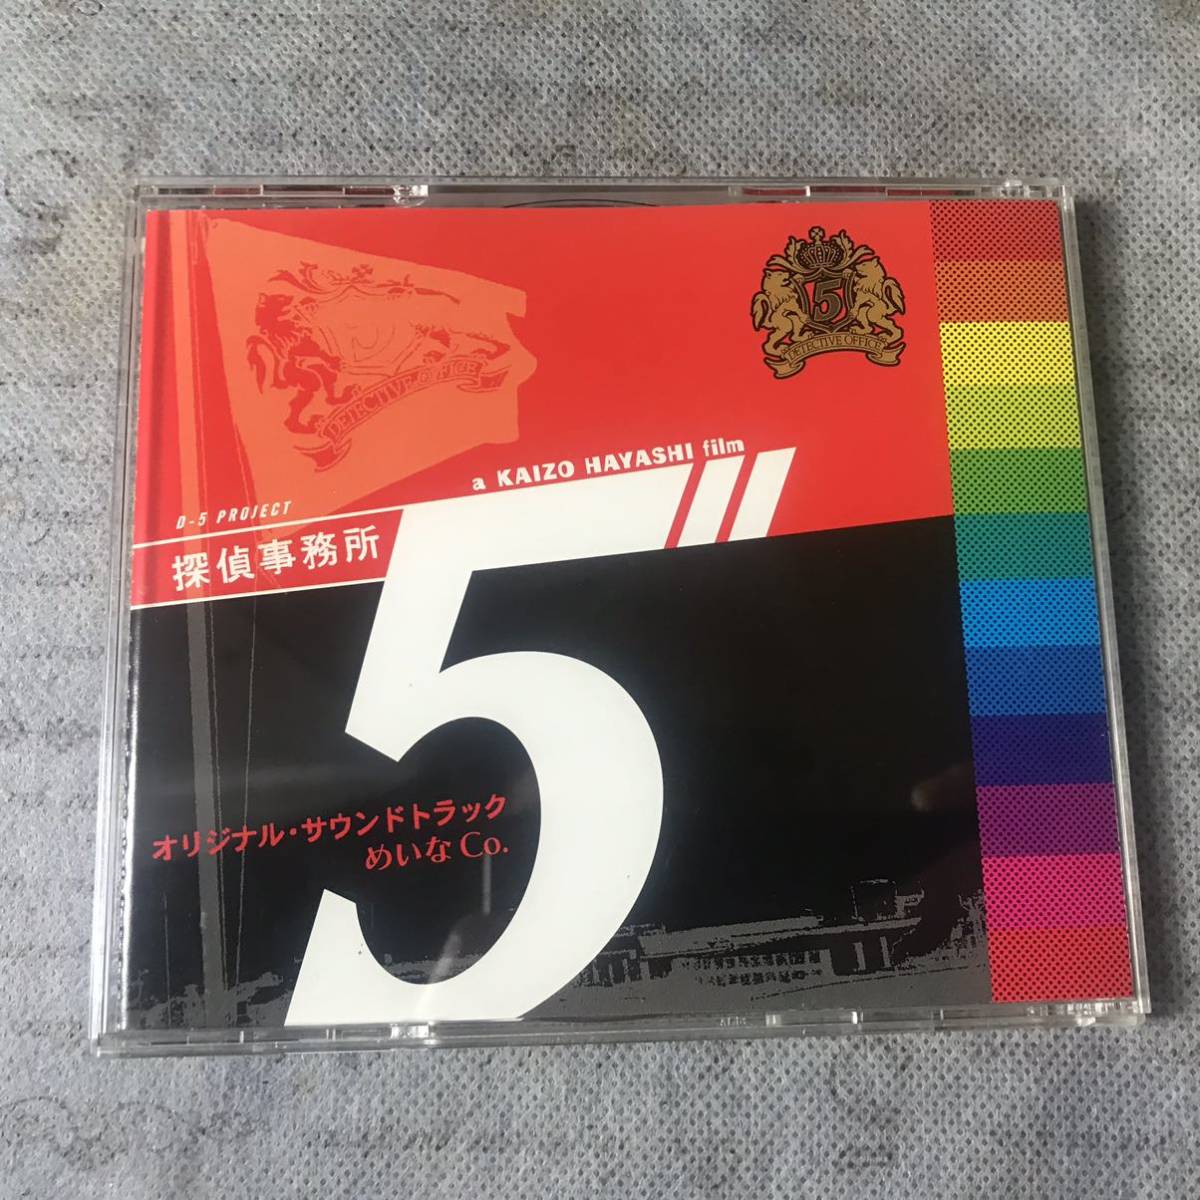 ★俺っちの探偵歌伝説/探偵事務所 5 オリジナルサウンドトラック 2CD hf5eの画像4